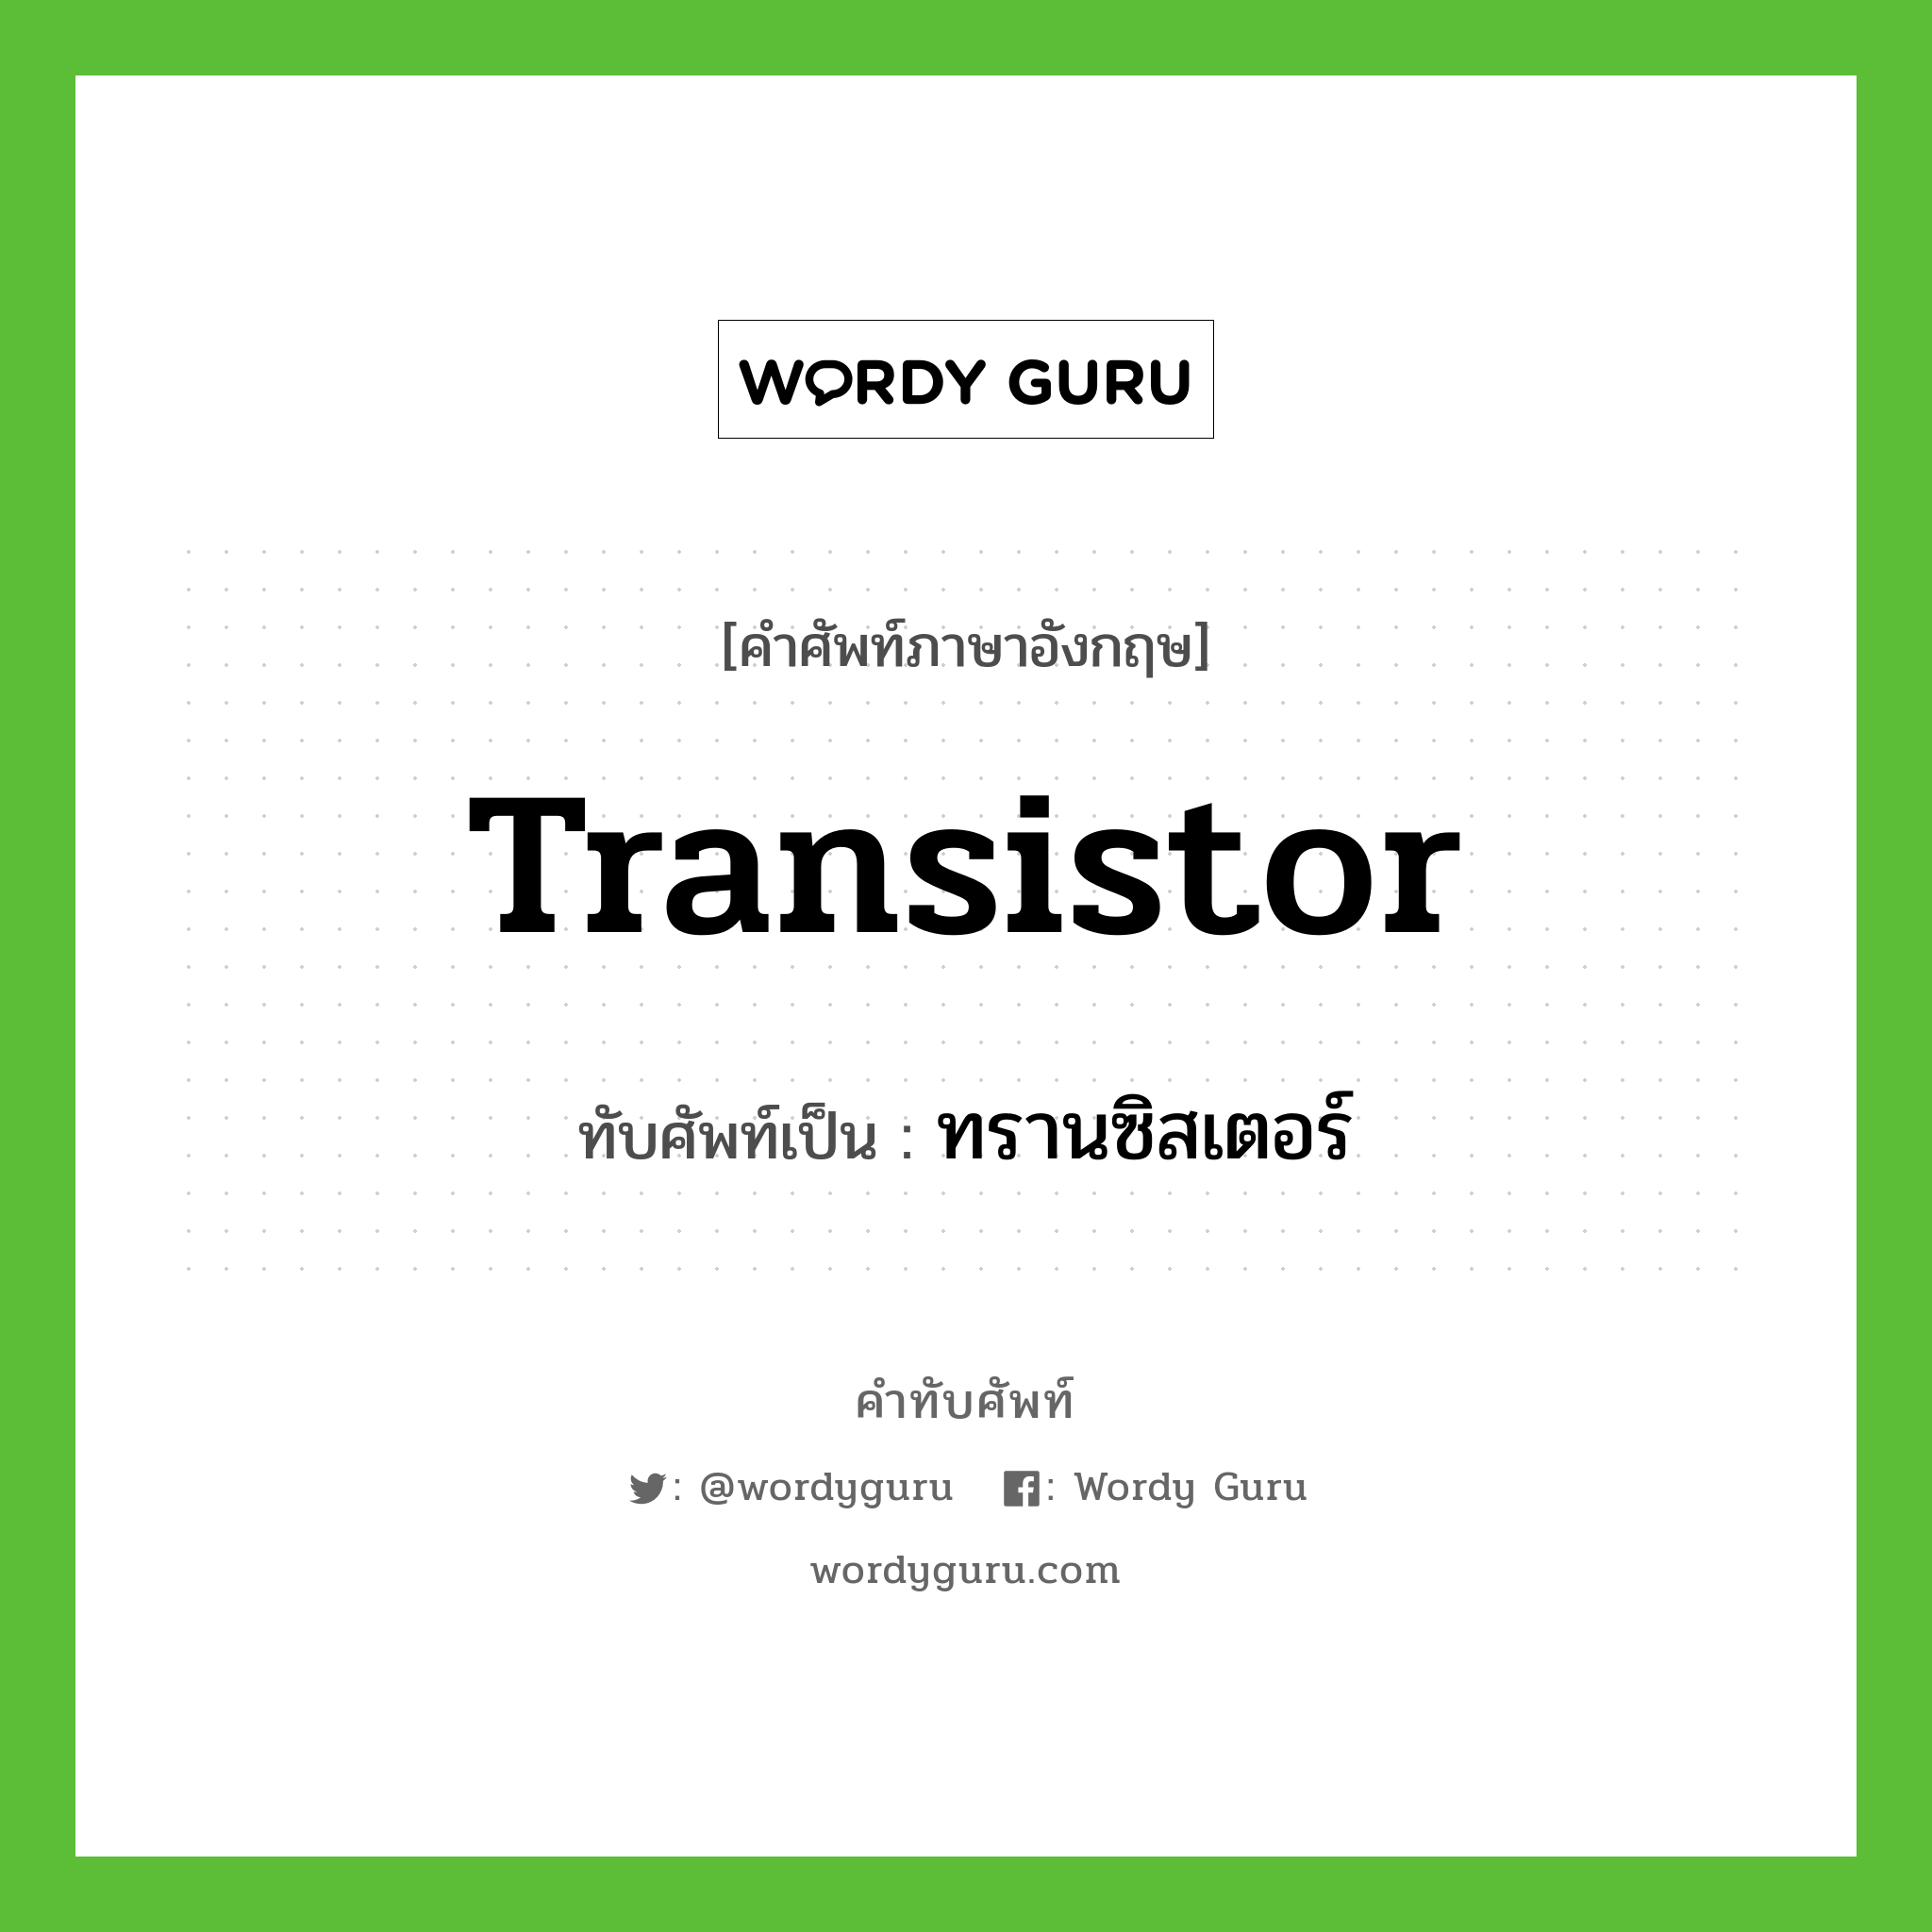 transistor เขียนเป็นคำไทยว่าอะไร?, คำศัพท์ภาษาอังกฤษ transistor ทับศัพท์เป็น ทรานซิสเตอร์